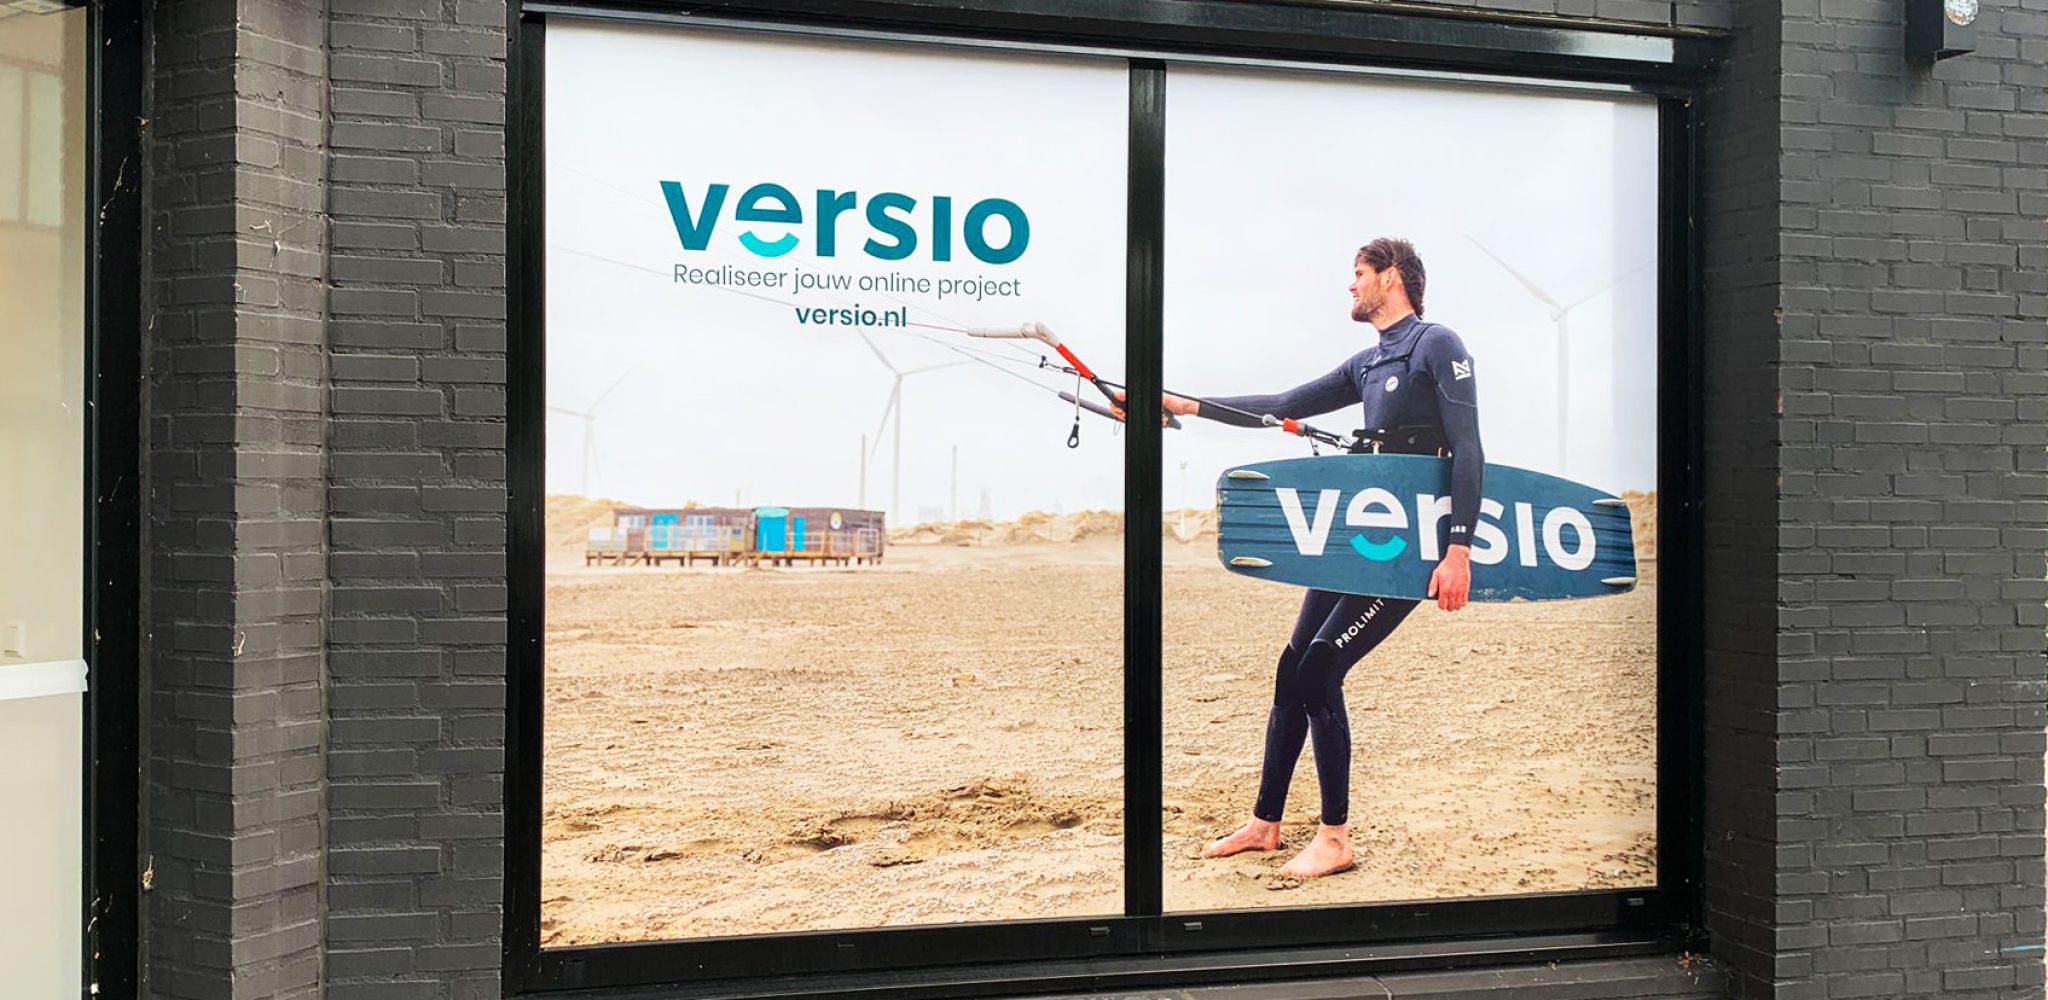 Onewayvision, raamvisual voor versio met foto man die surft